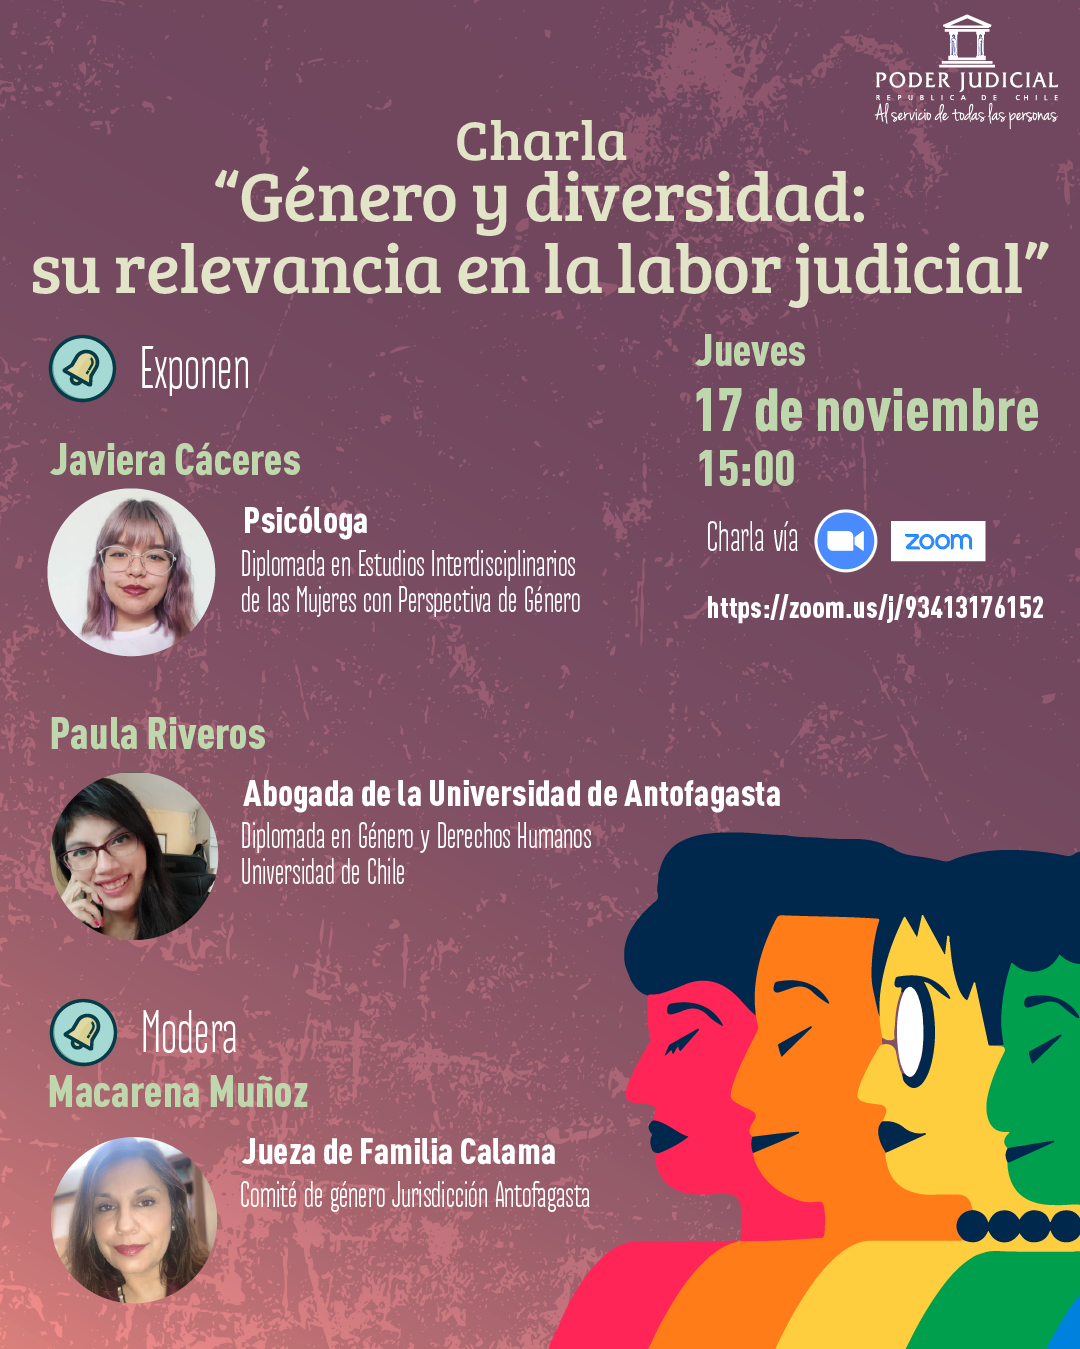 Corte de Antofagasta invita a charla sobre género y diversidad